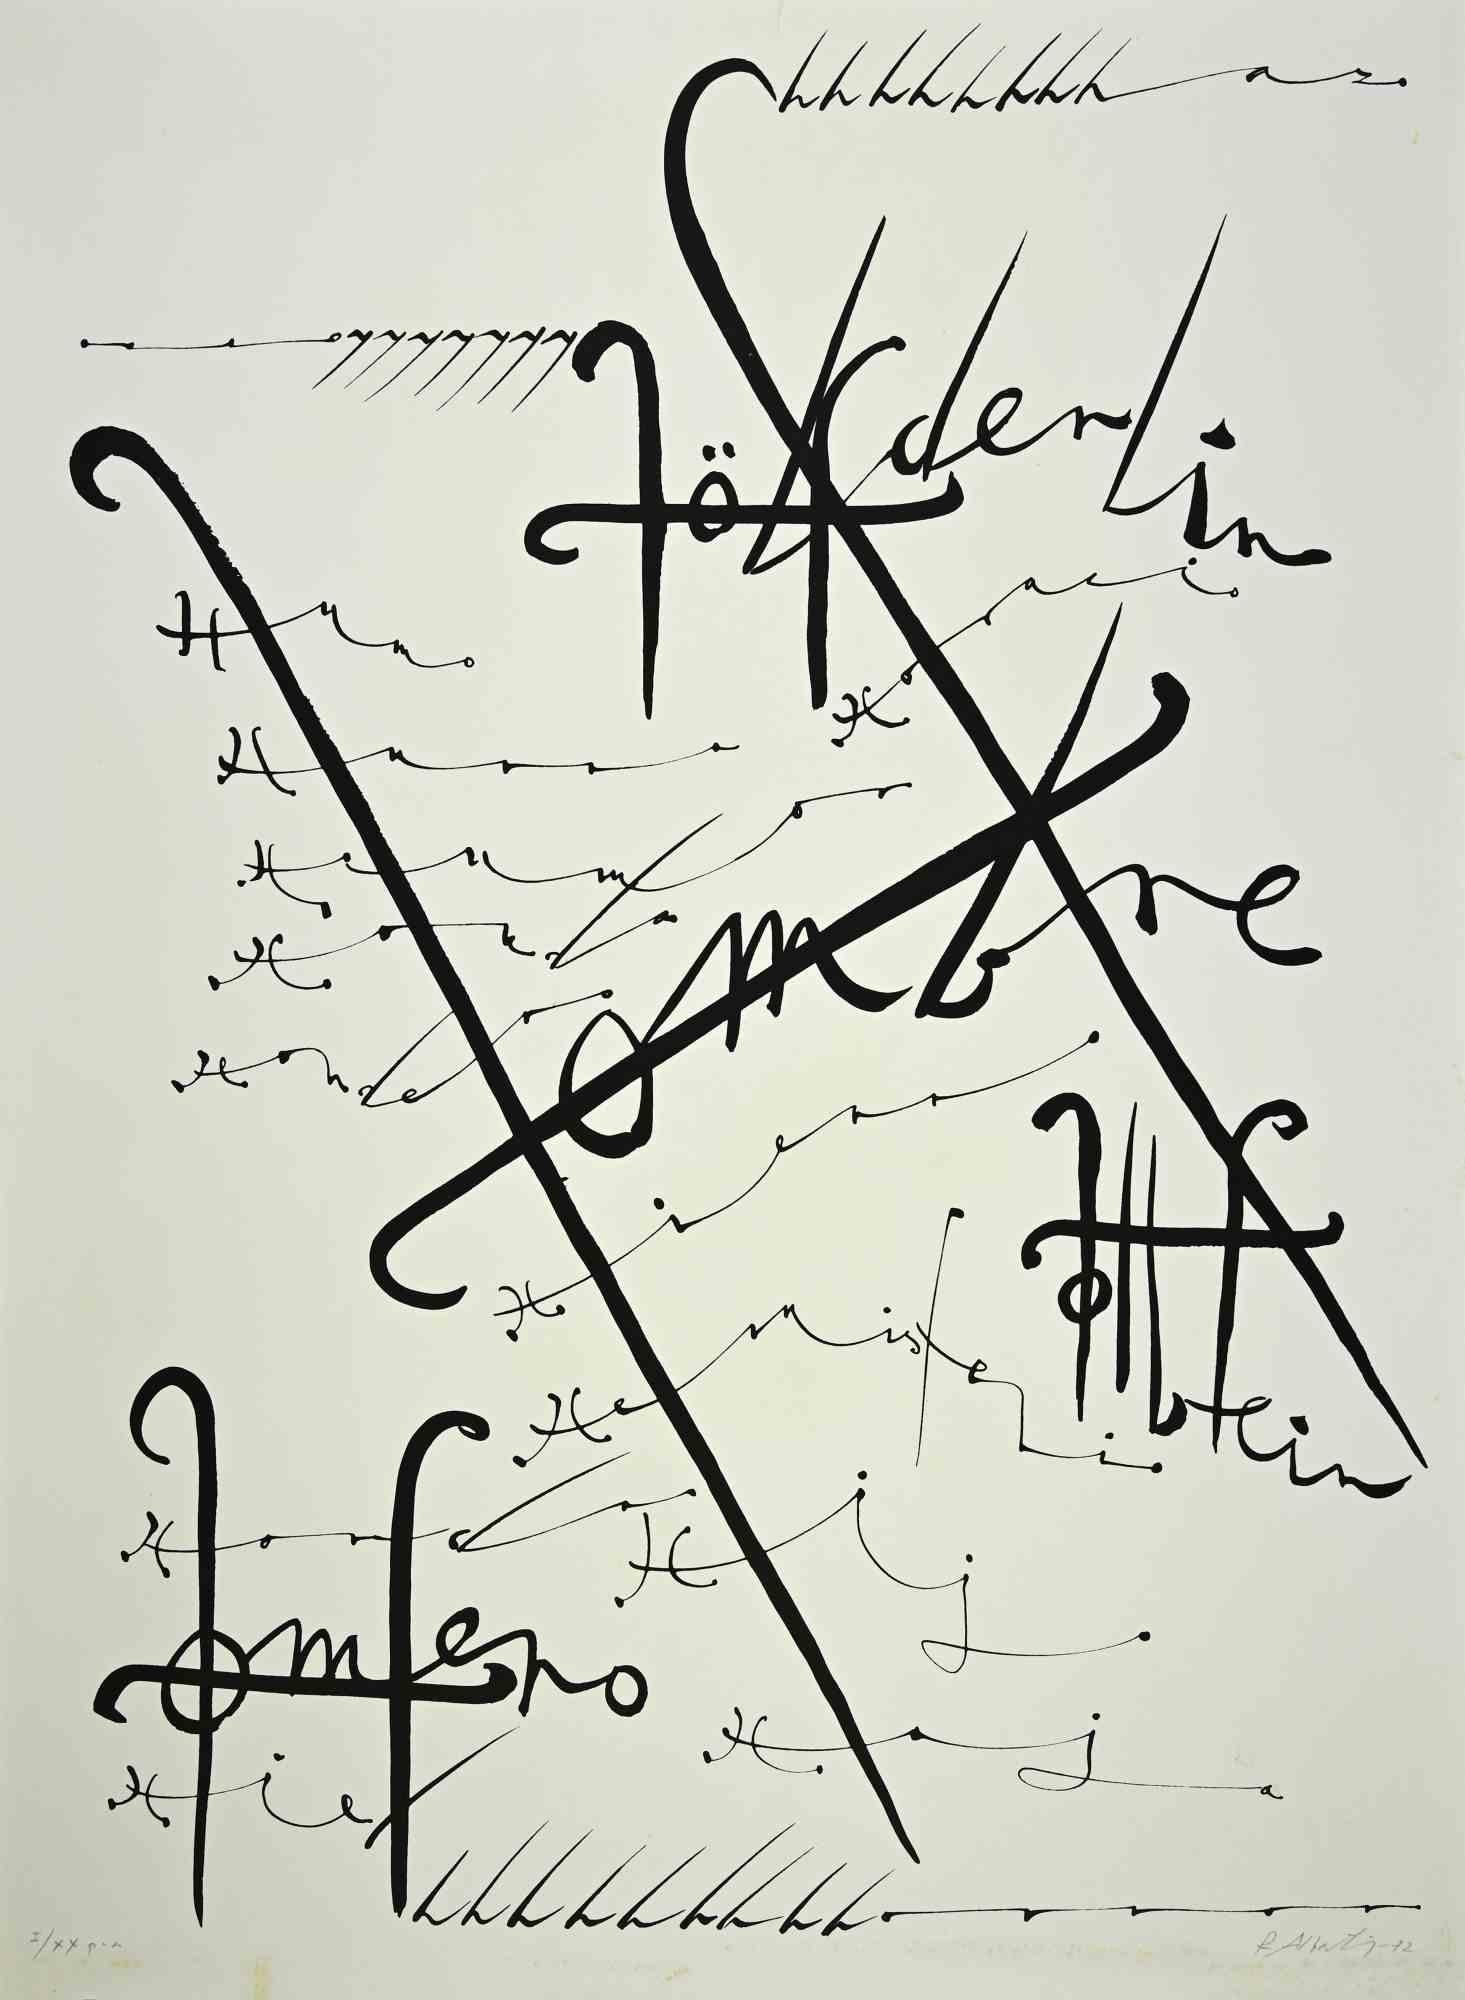 La lettre H de la série Alphabet est une lithographie réalisée par Rafael Alberti en 1972.

Signé à la main.

La preuve par l'image. Edition, I/XX tirages.

L'état de conservation est très bon.

L'œuvre d'art représente la lettre de l'alphabet, avec